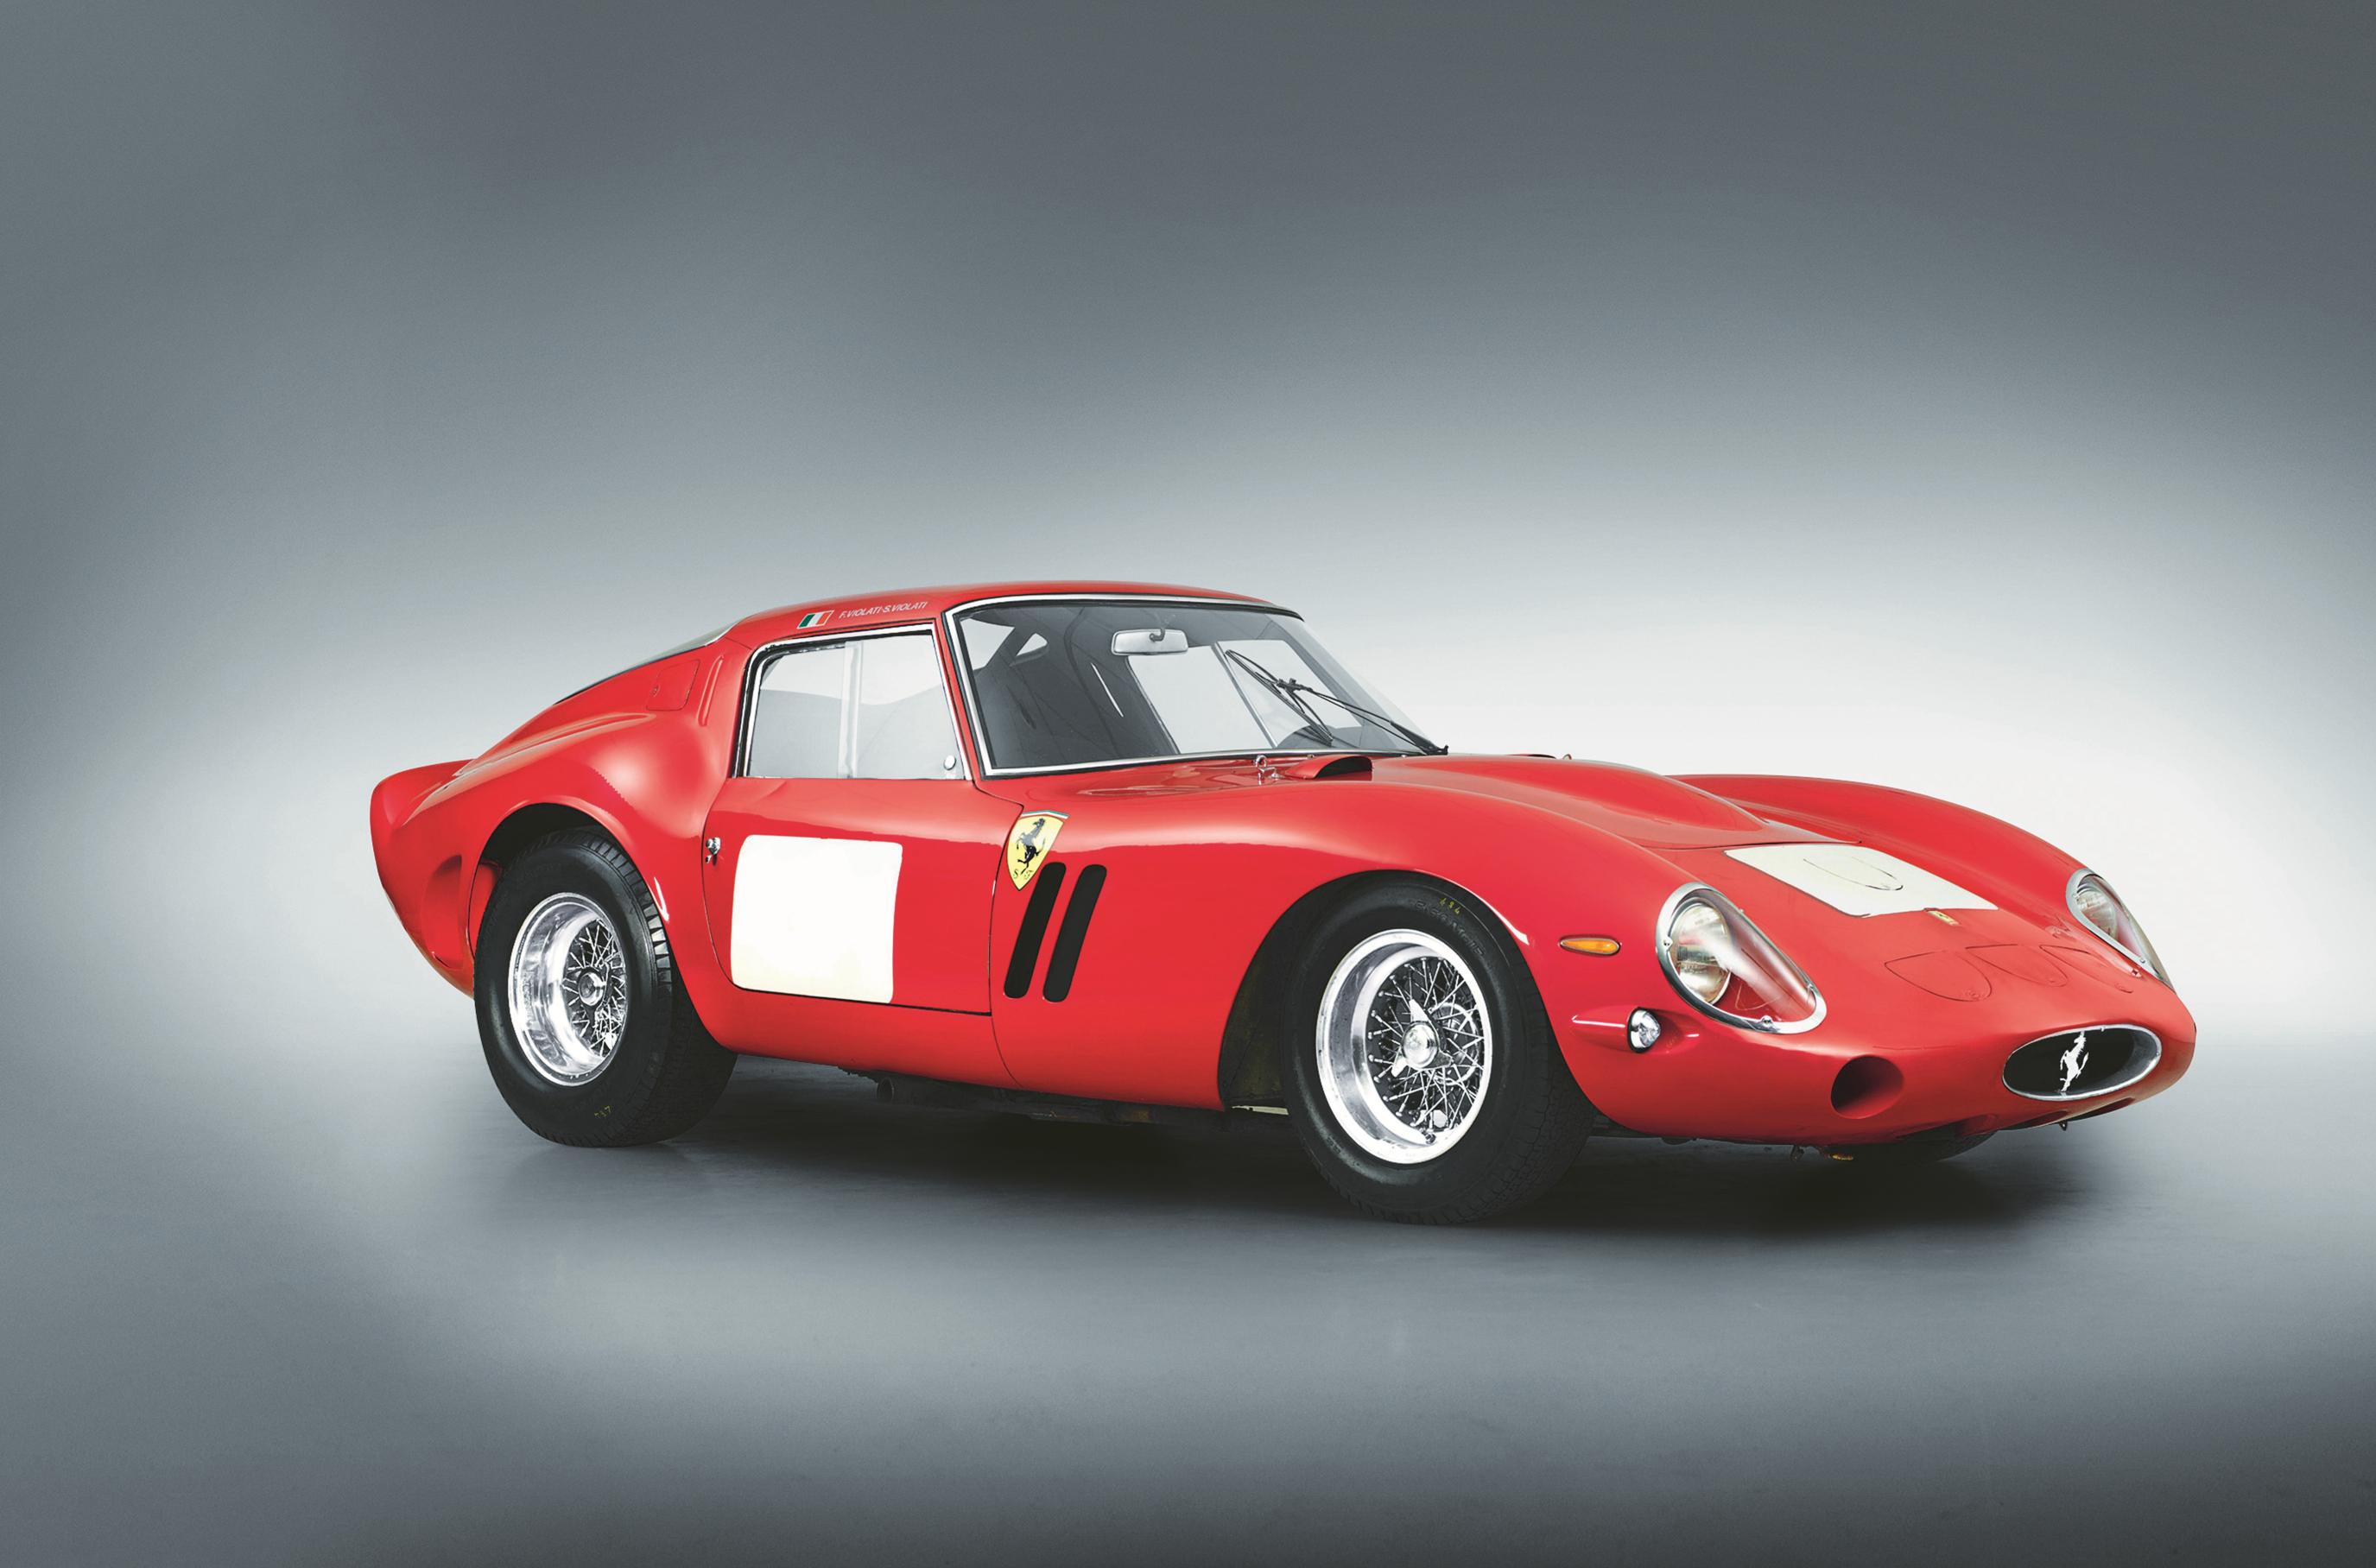 Używany i najdroższy samochód świata! Ferrari 250 GTO za